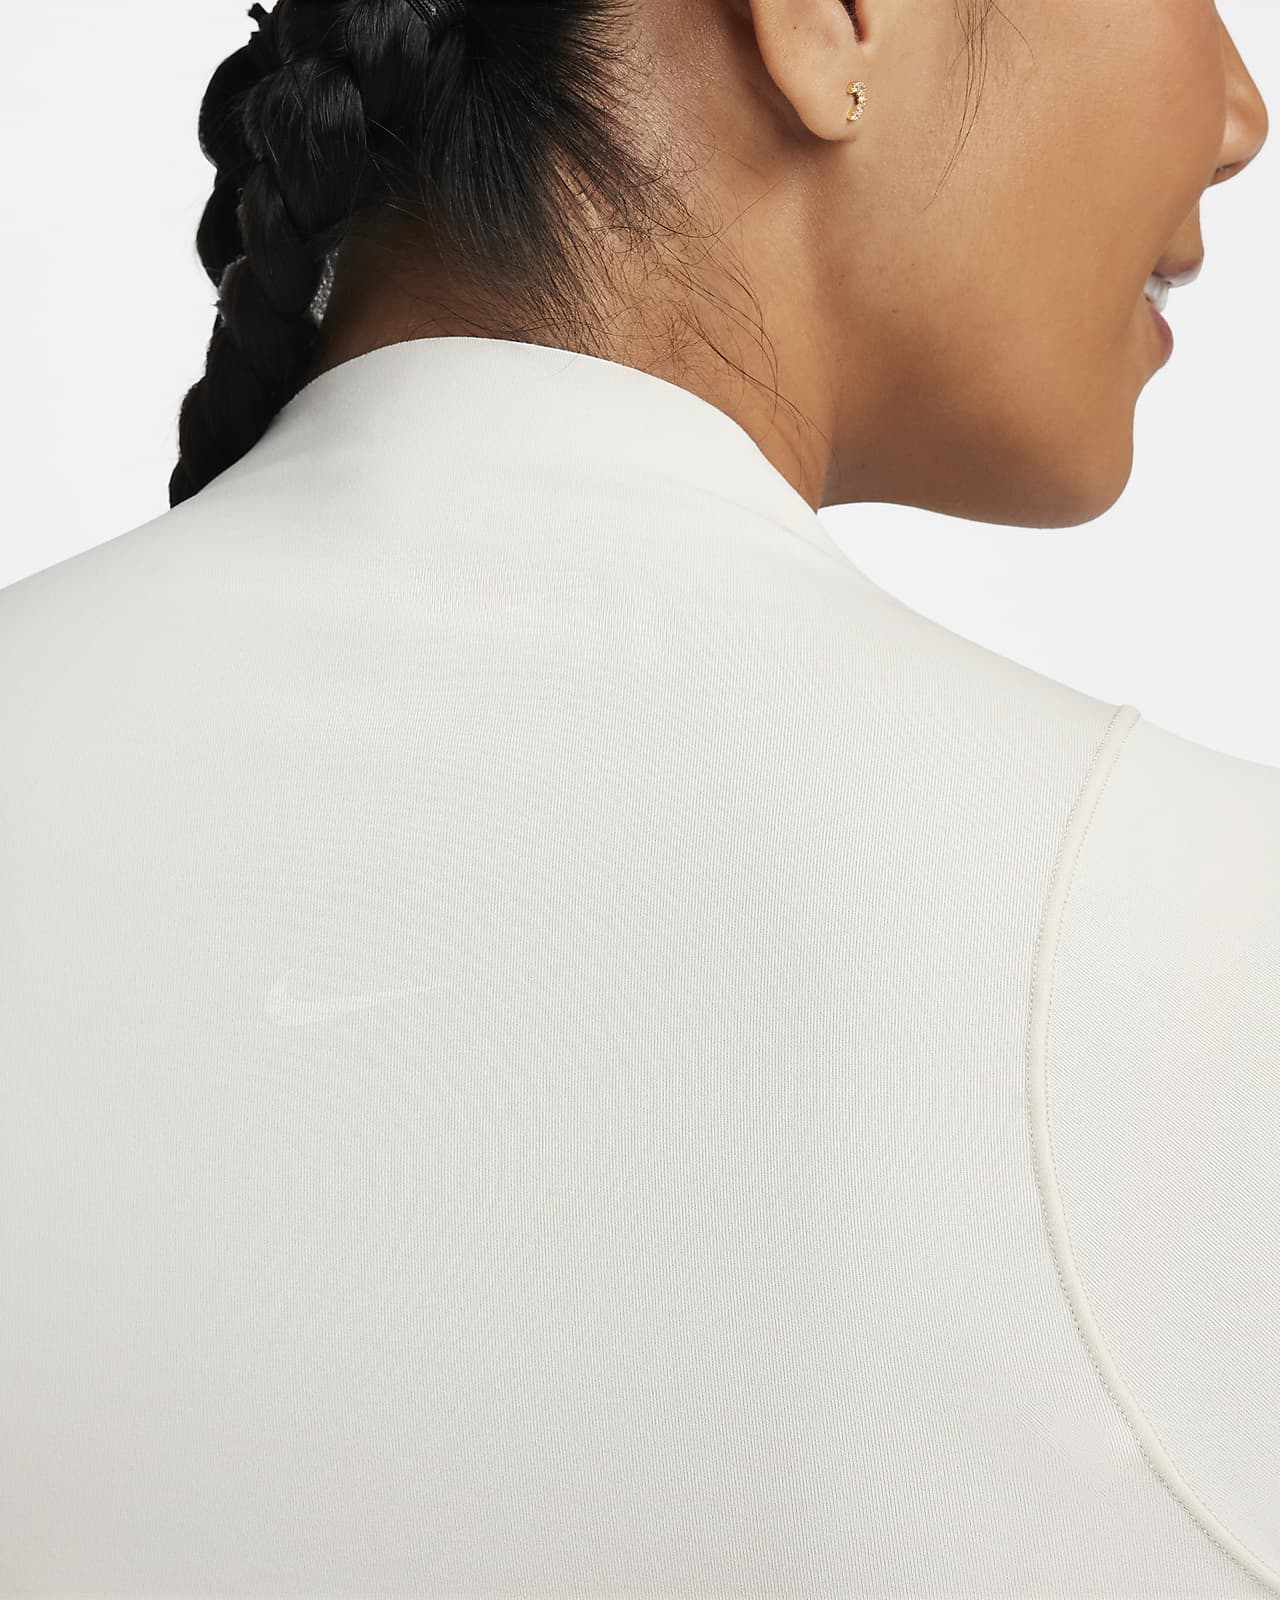 Combinaison courte Nike Zenvy Dri-FIT pour femme. Nike CA